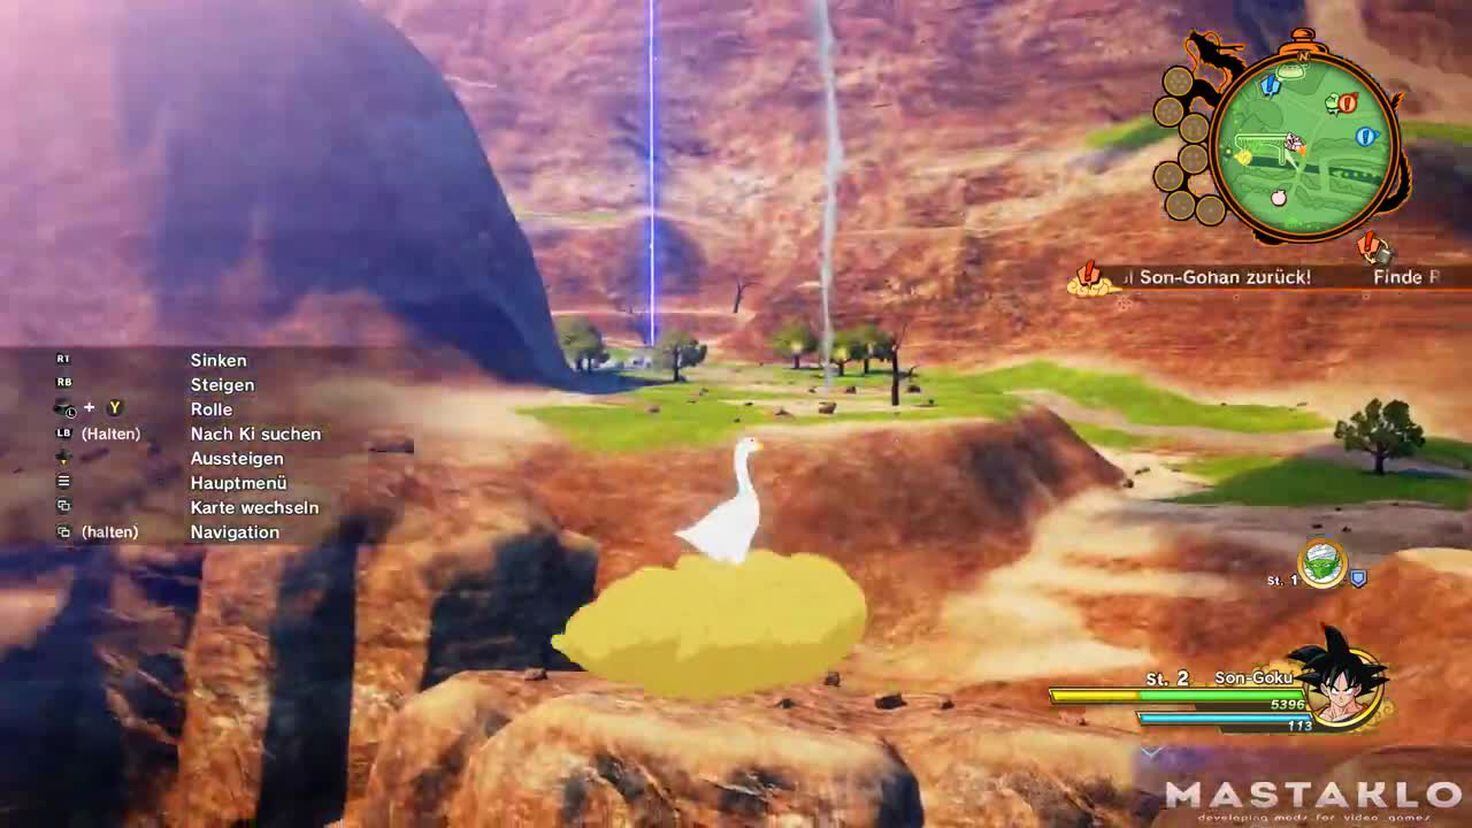 Dragon Ball Z: Kakarot - Mod permite que você jogue com um Ganso no lugar  de Goku - Combo Infinito